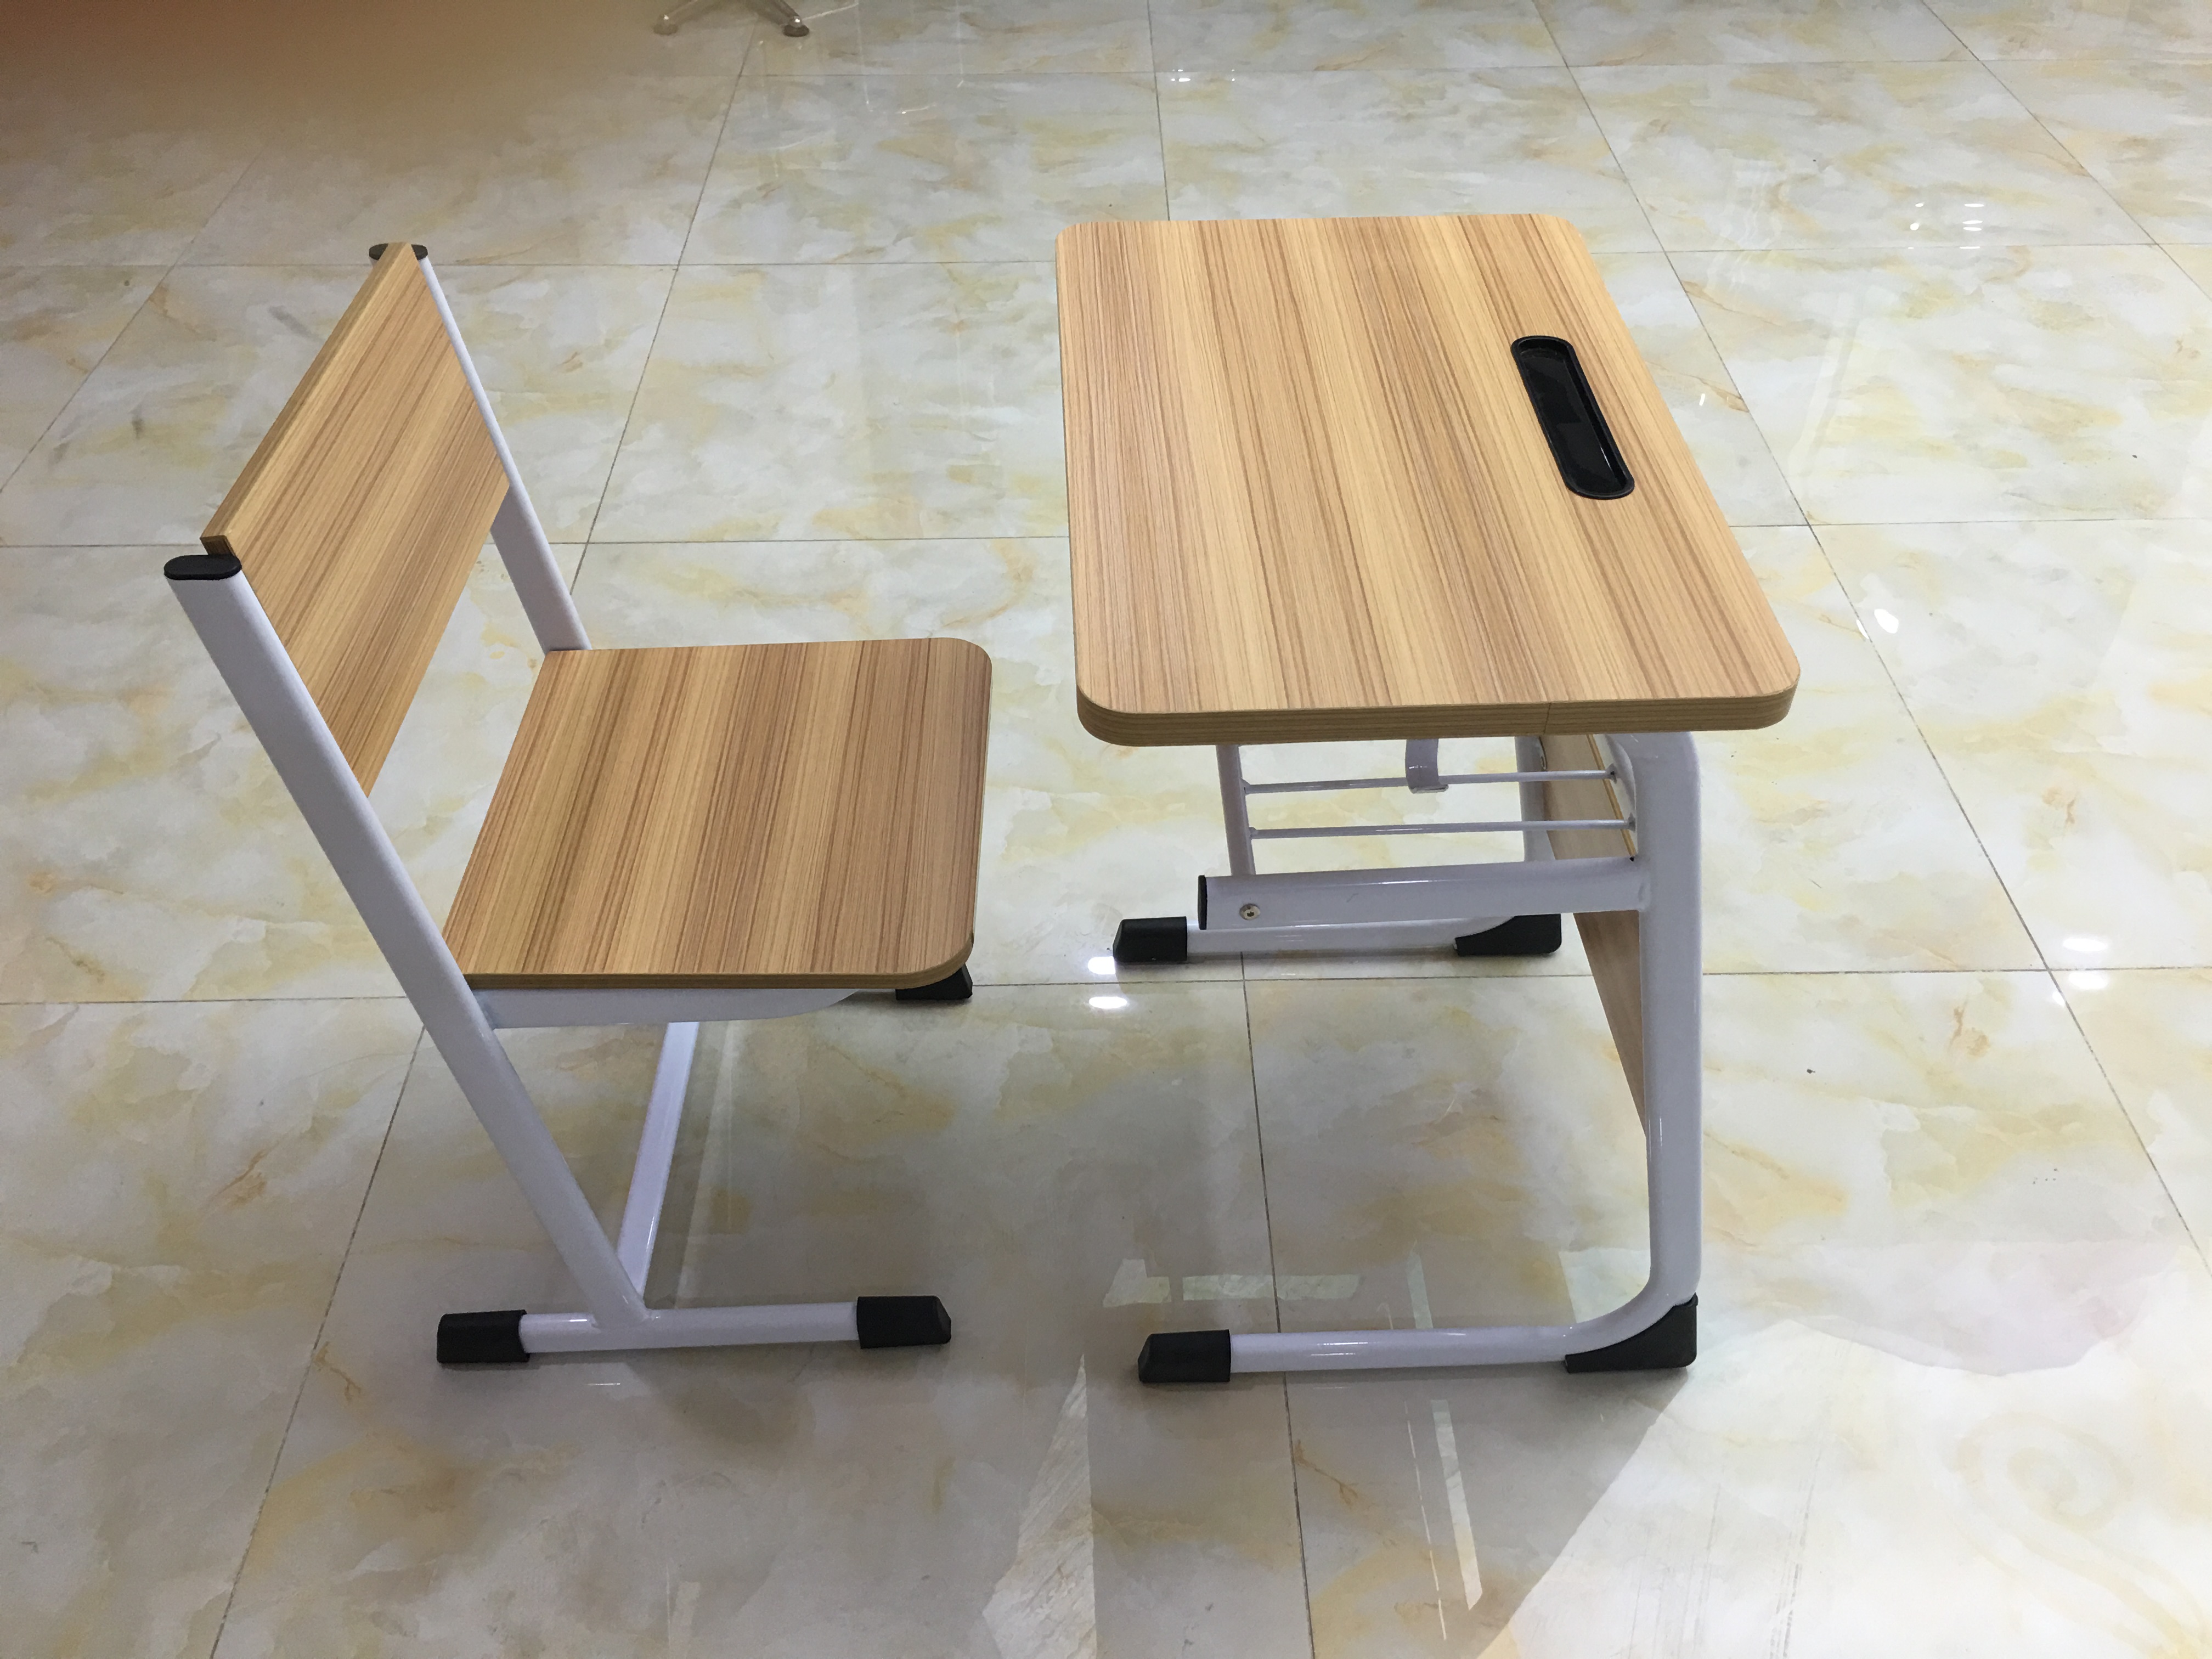 东鑫钢木学生课桌椅厂家直销批发价格木板学生课桌椅供应商批发价